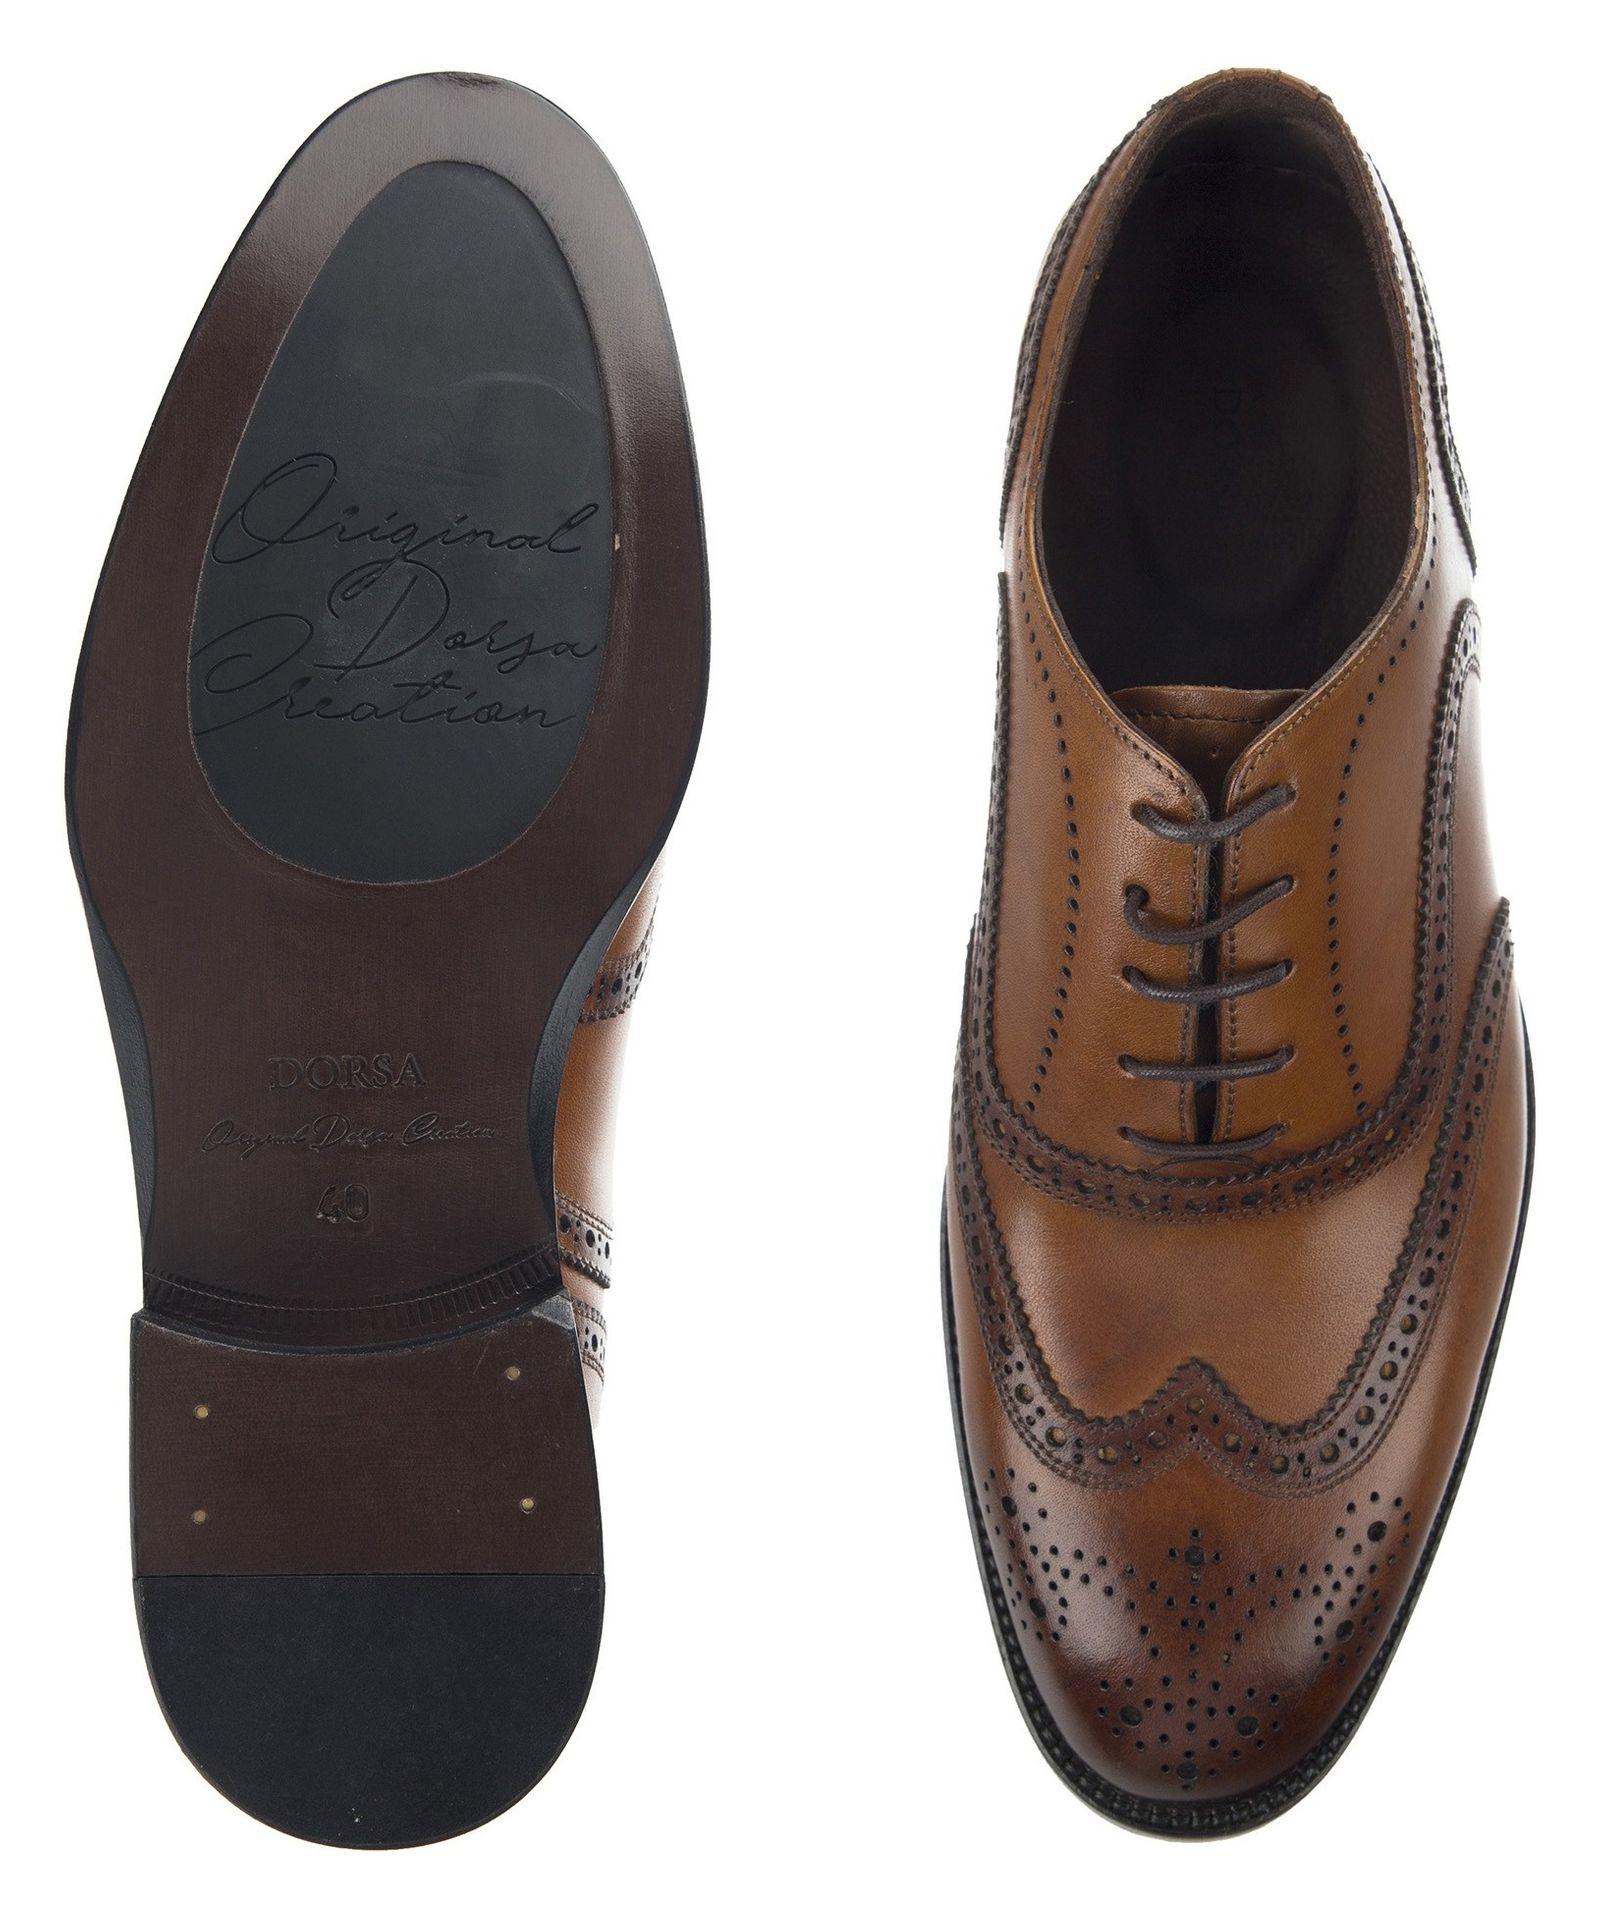 کفش چرم رسمی مردانه - درسا - Brown - 6